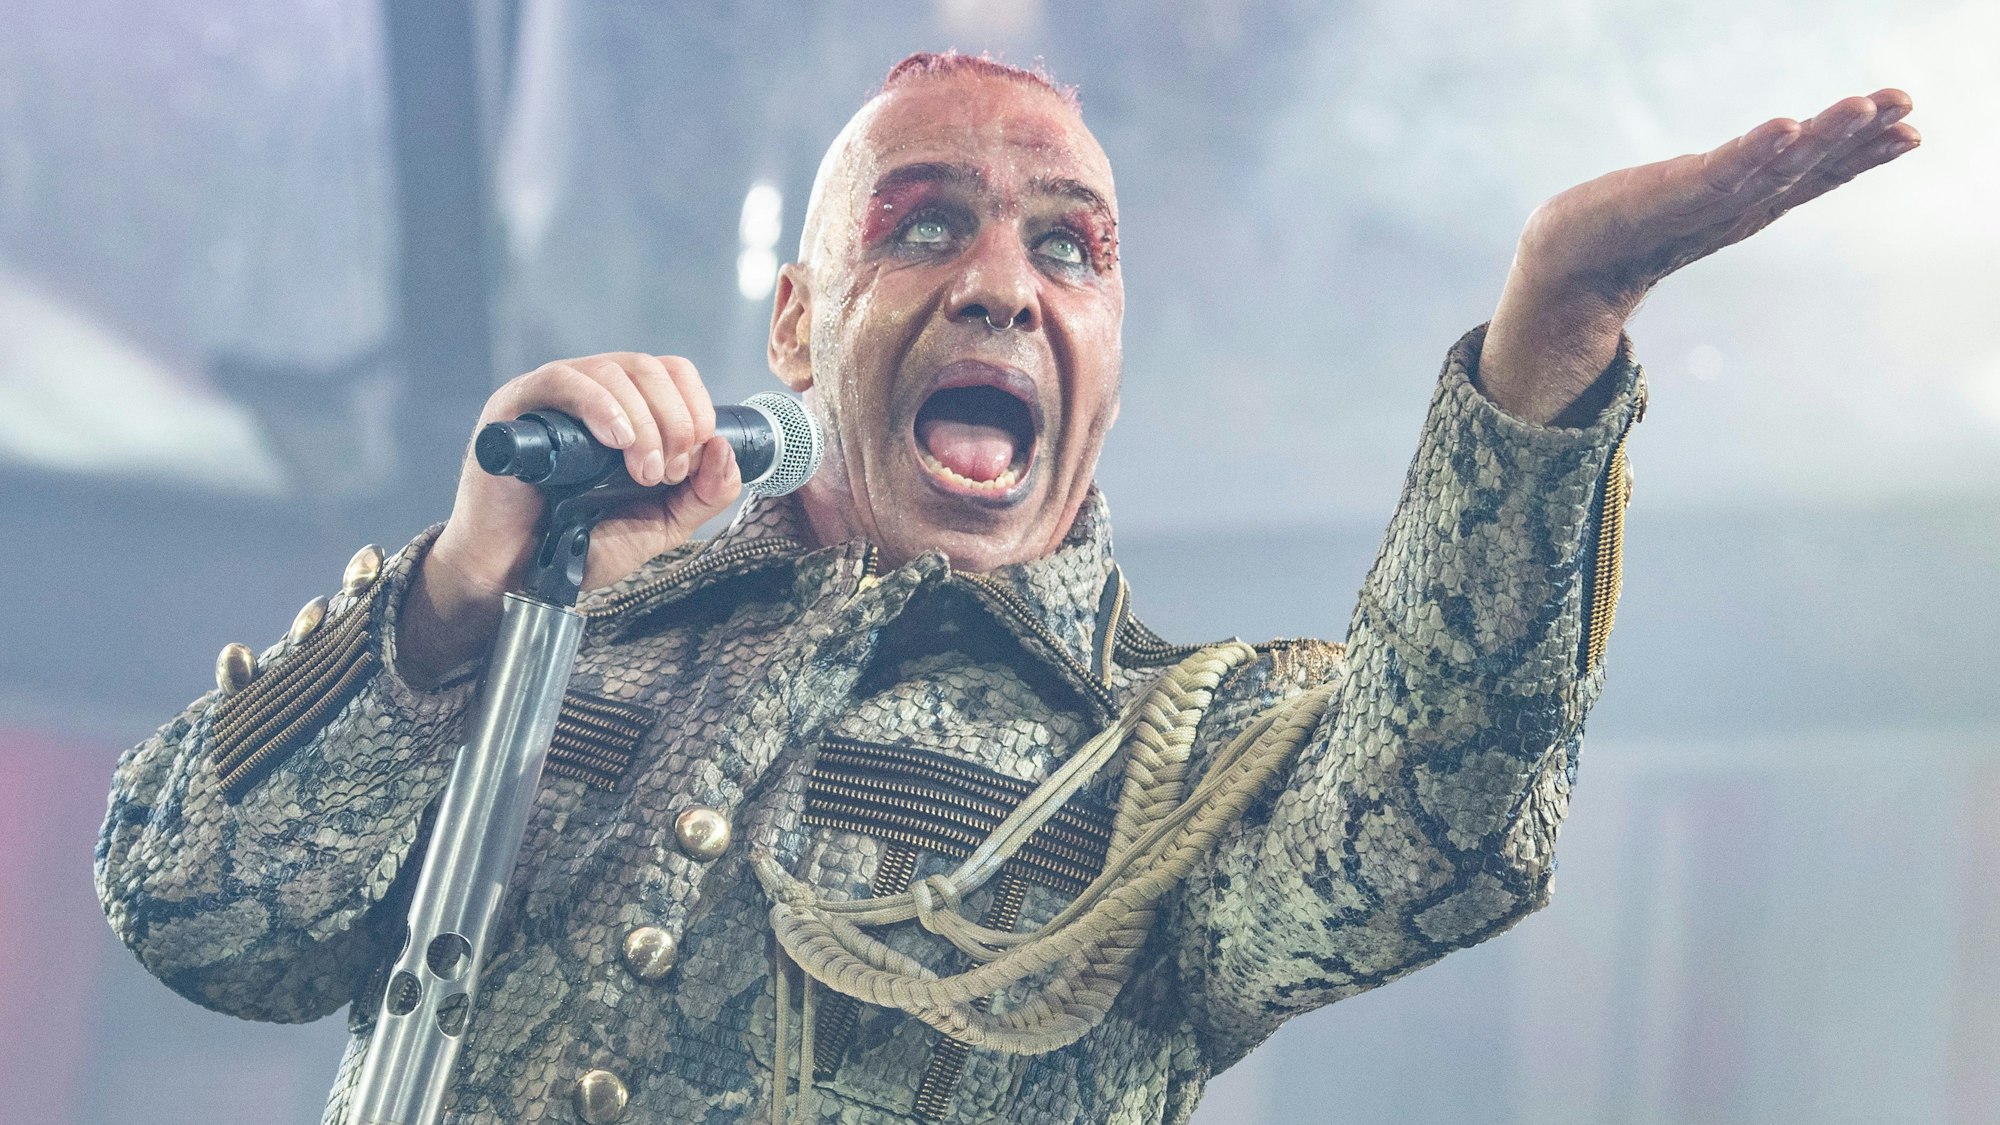 Till Lindemann, Frontsänger der deutschen Rockband Rammstein, singt in der Commerzbank-Arena. Die Band tritt hier im Rahmen ihrer „Europe Stadion Tour 2019“ auf